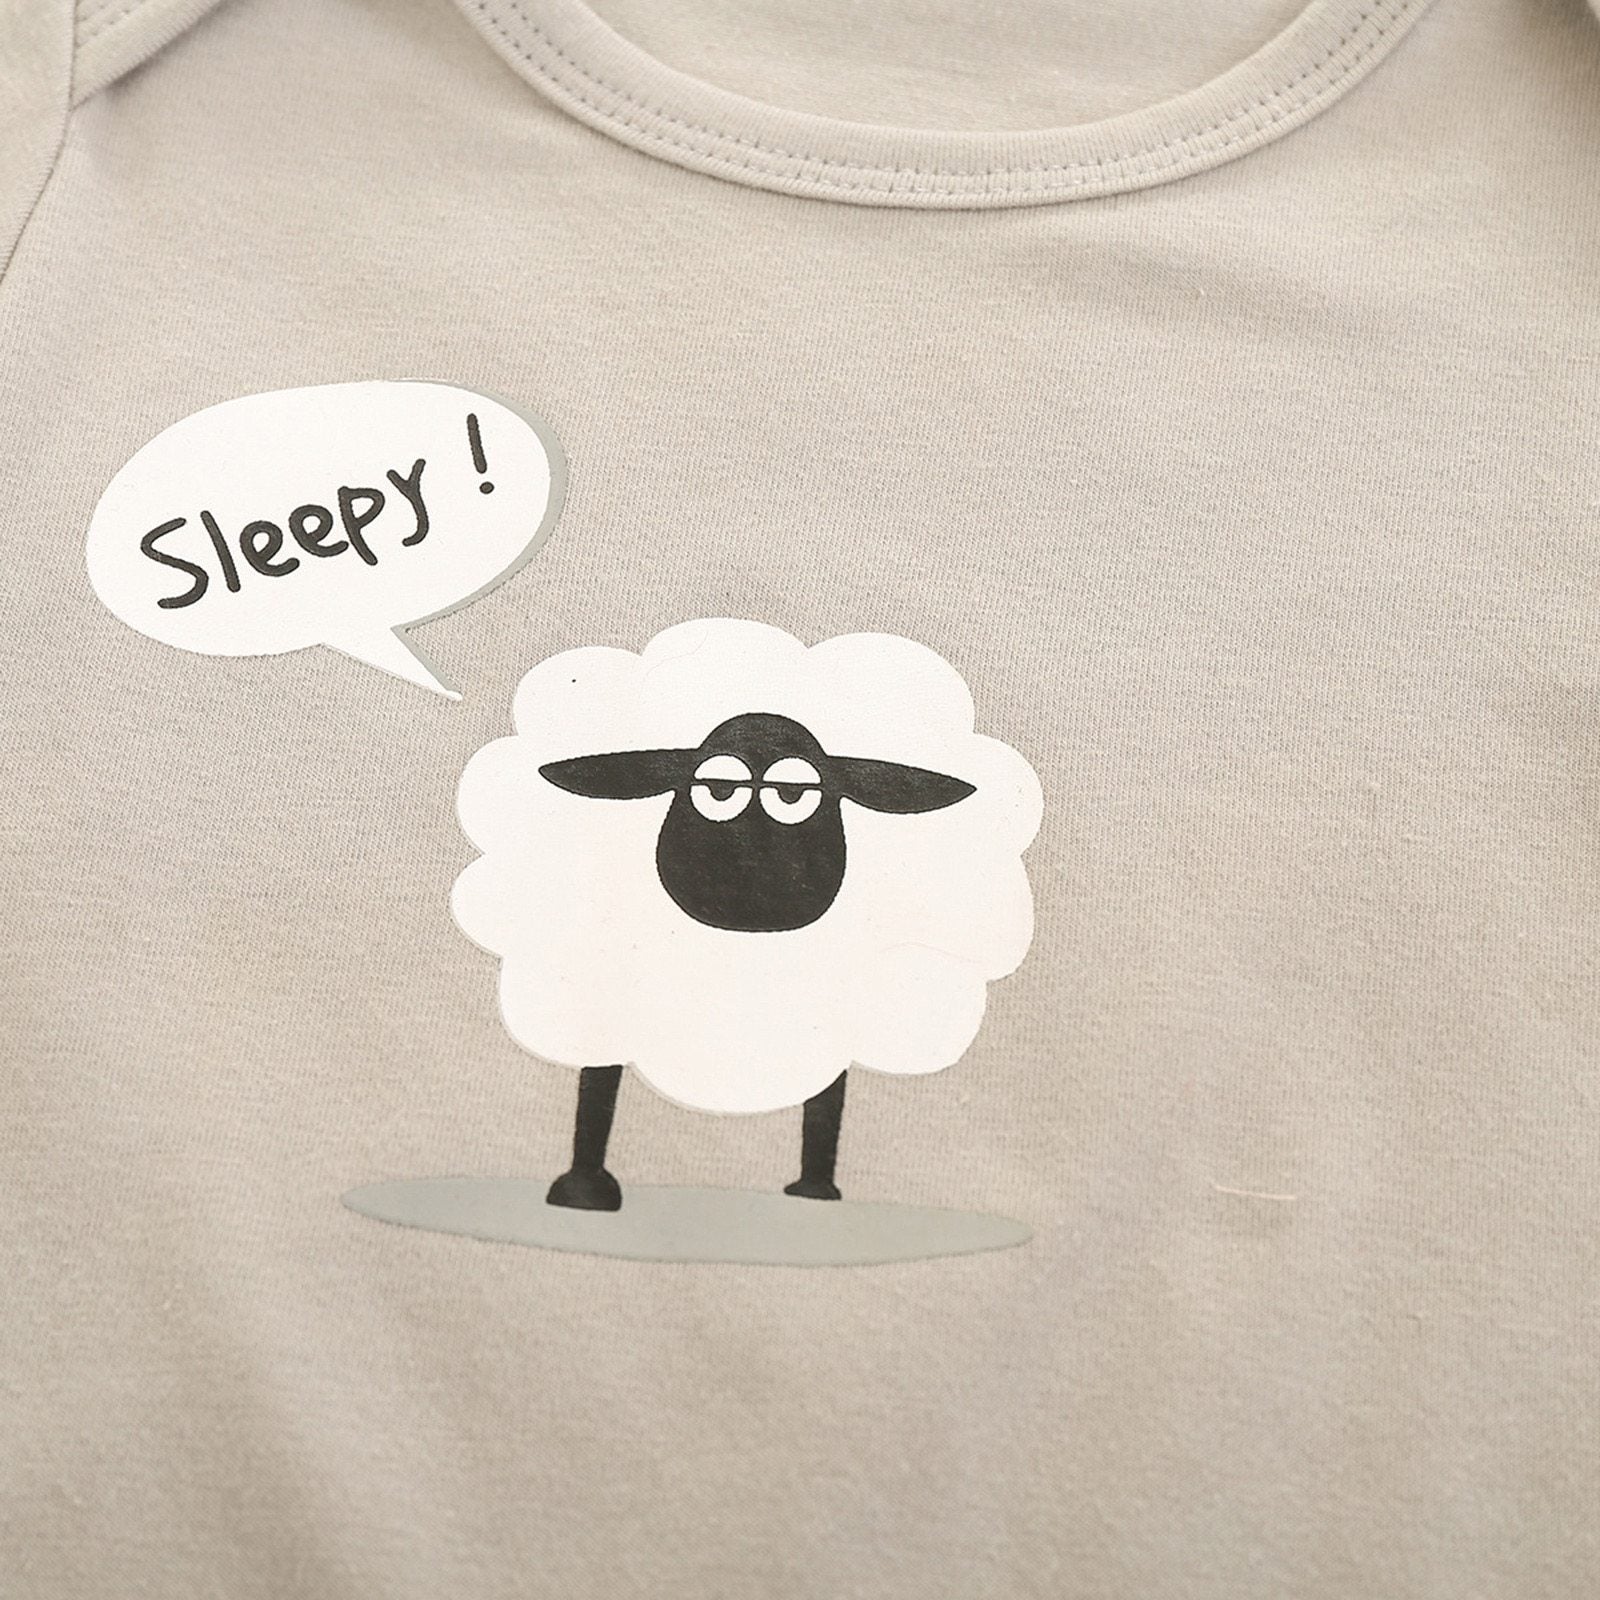 Sleepy Sheep Outfit